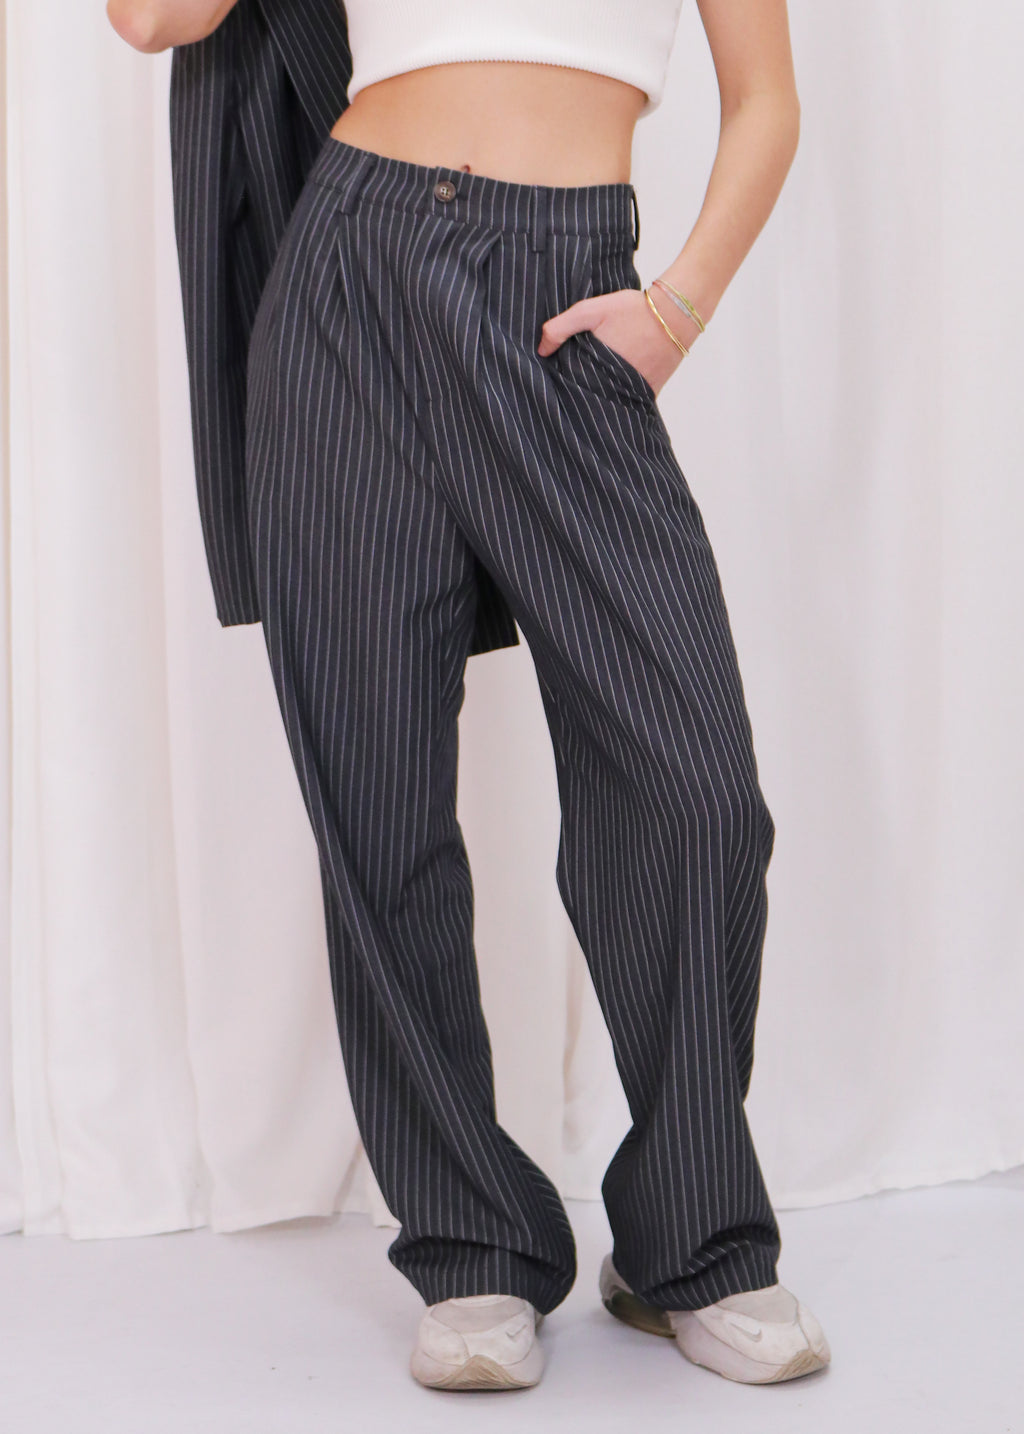 Man Style Pant- Charcoal Stripe